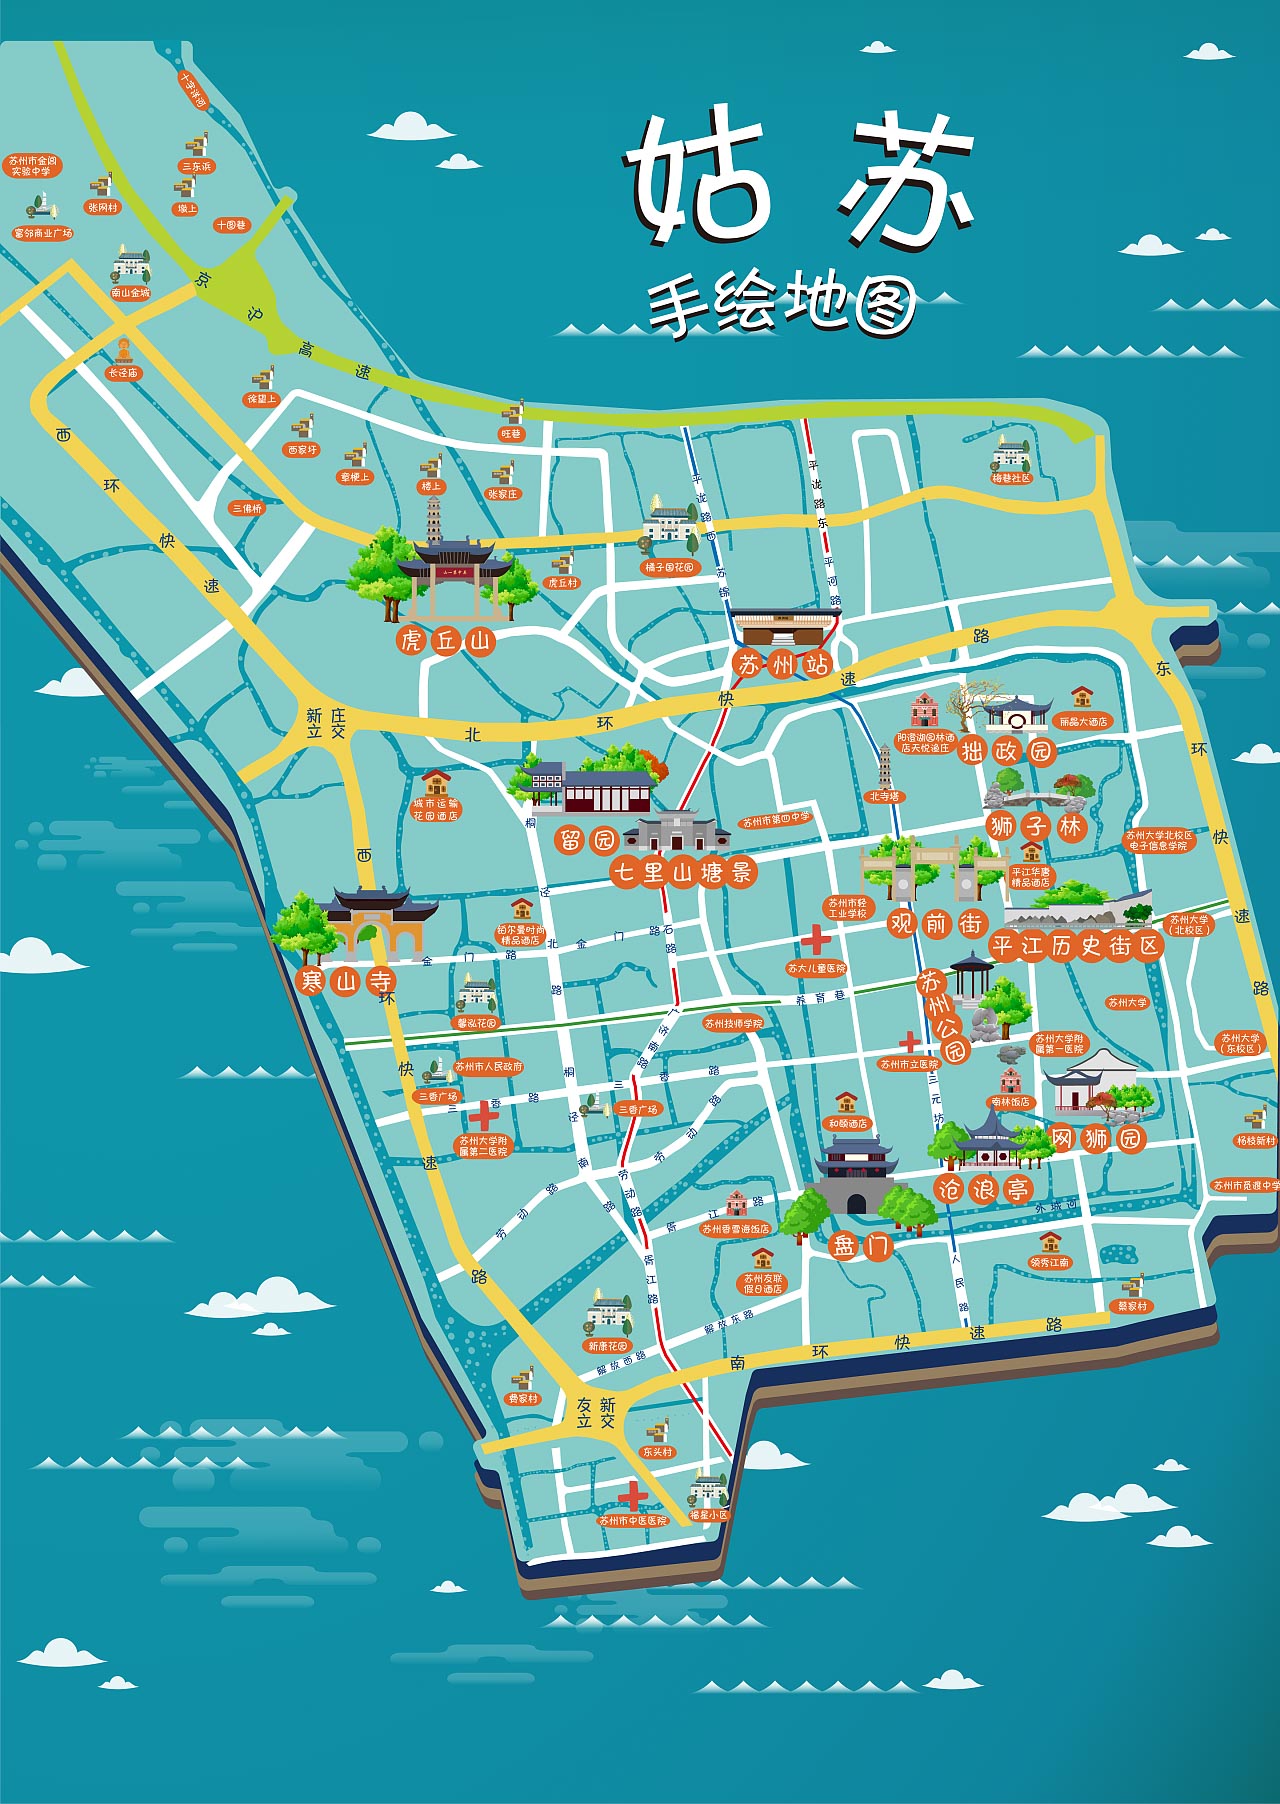 麻洋镇手绘地图景区的文化宝藏